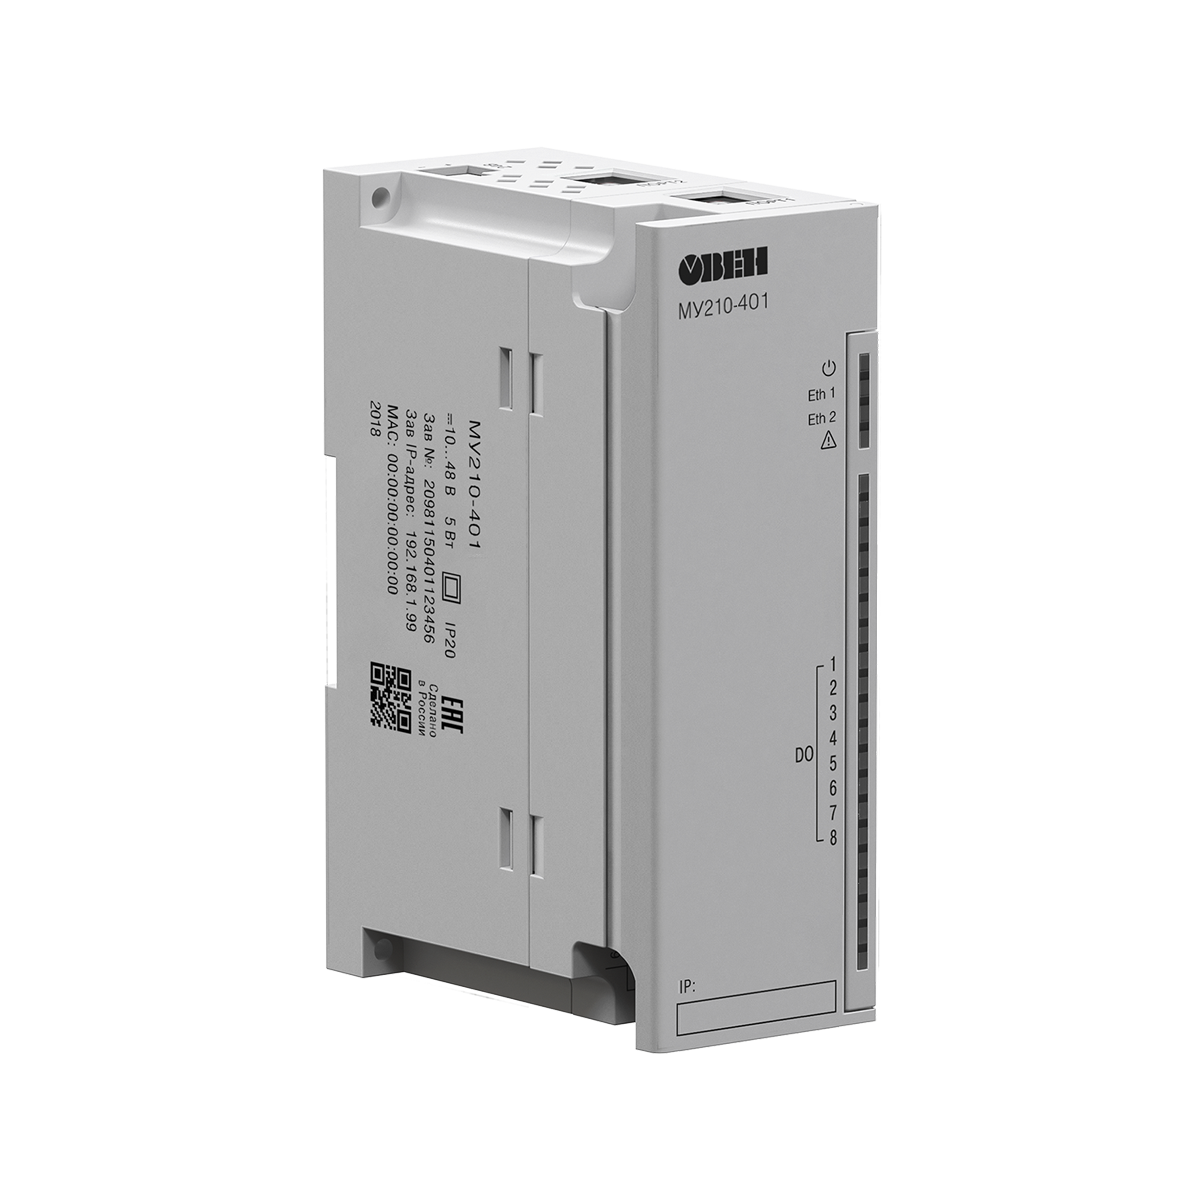 МУ210-4хх модули дискретного вывода (DO)